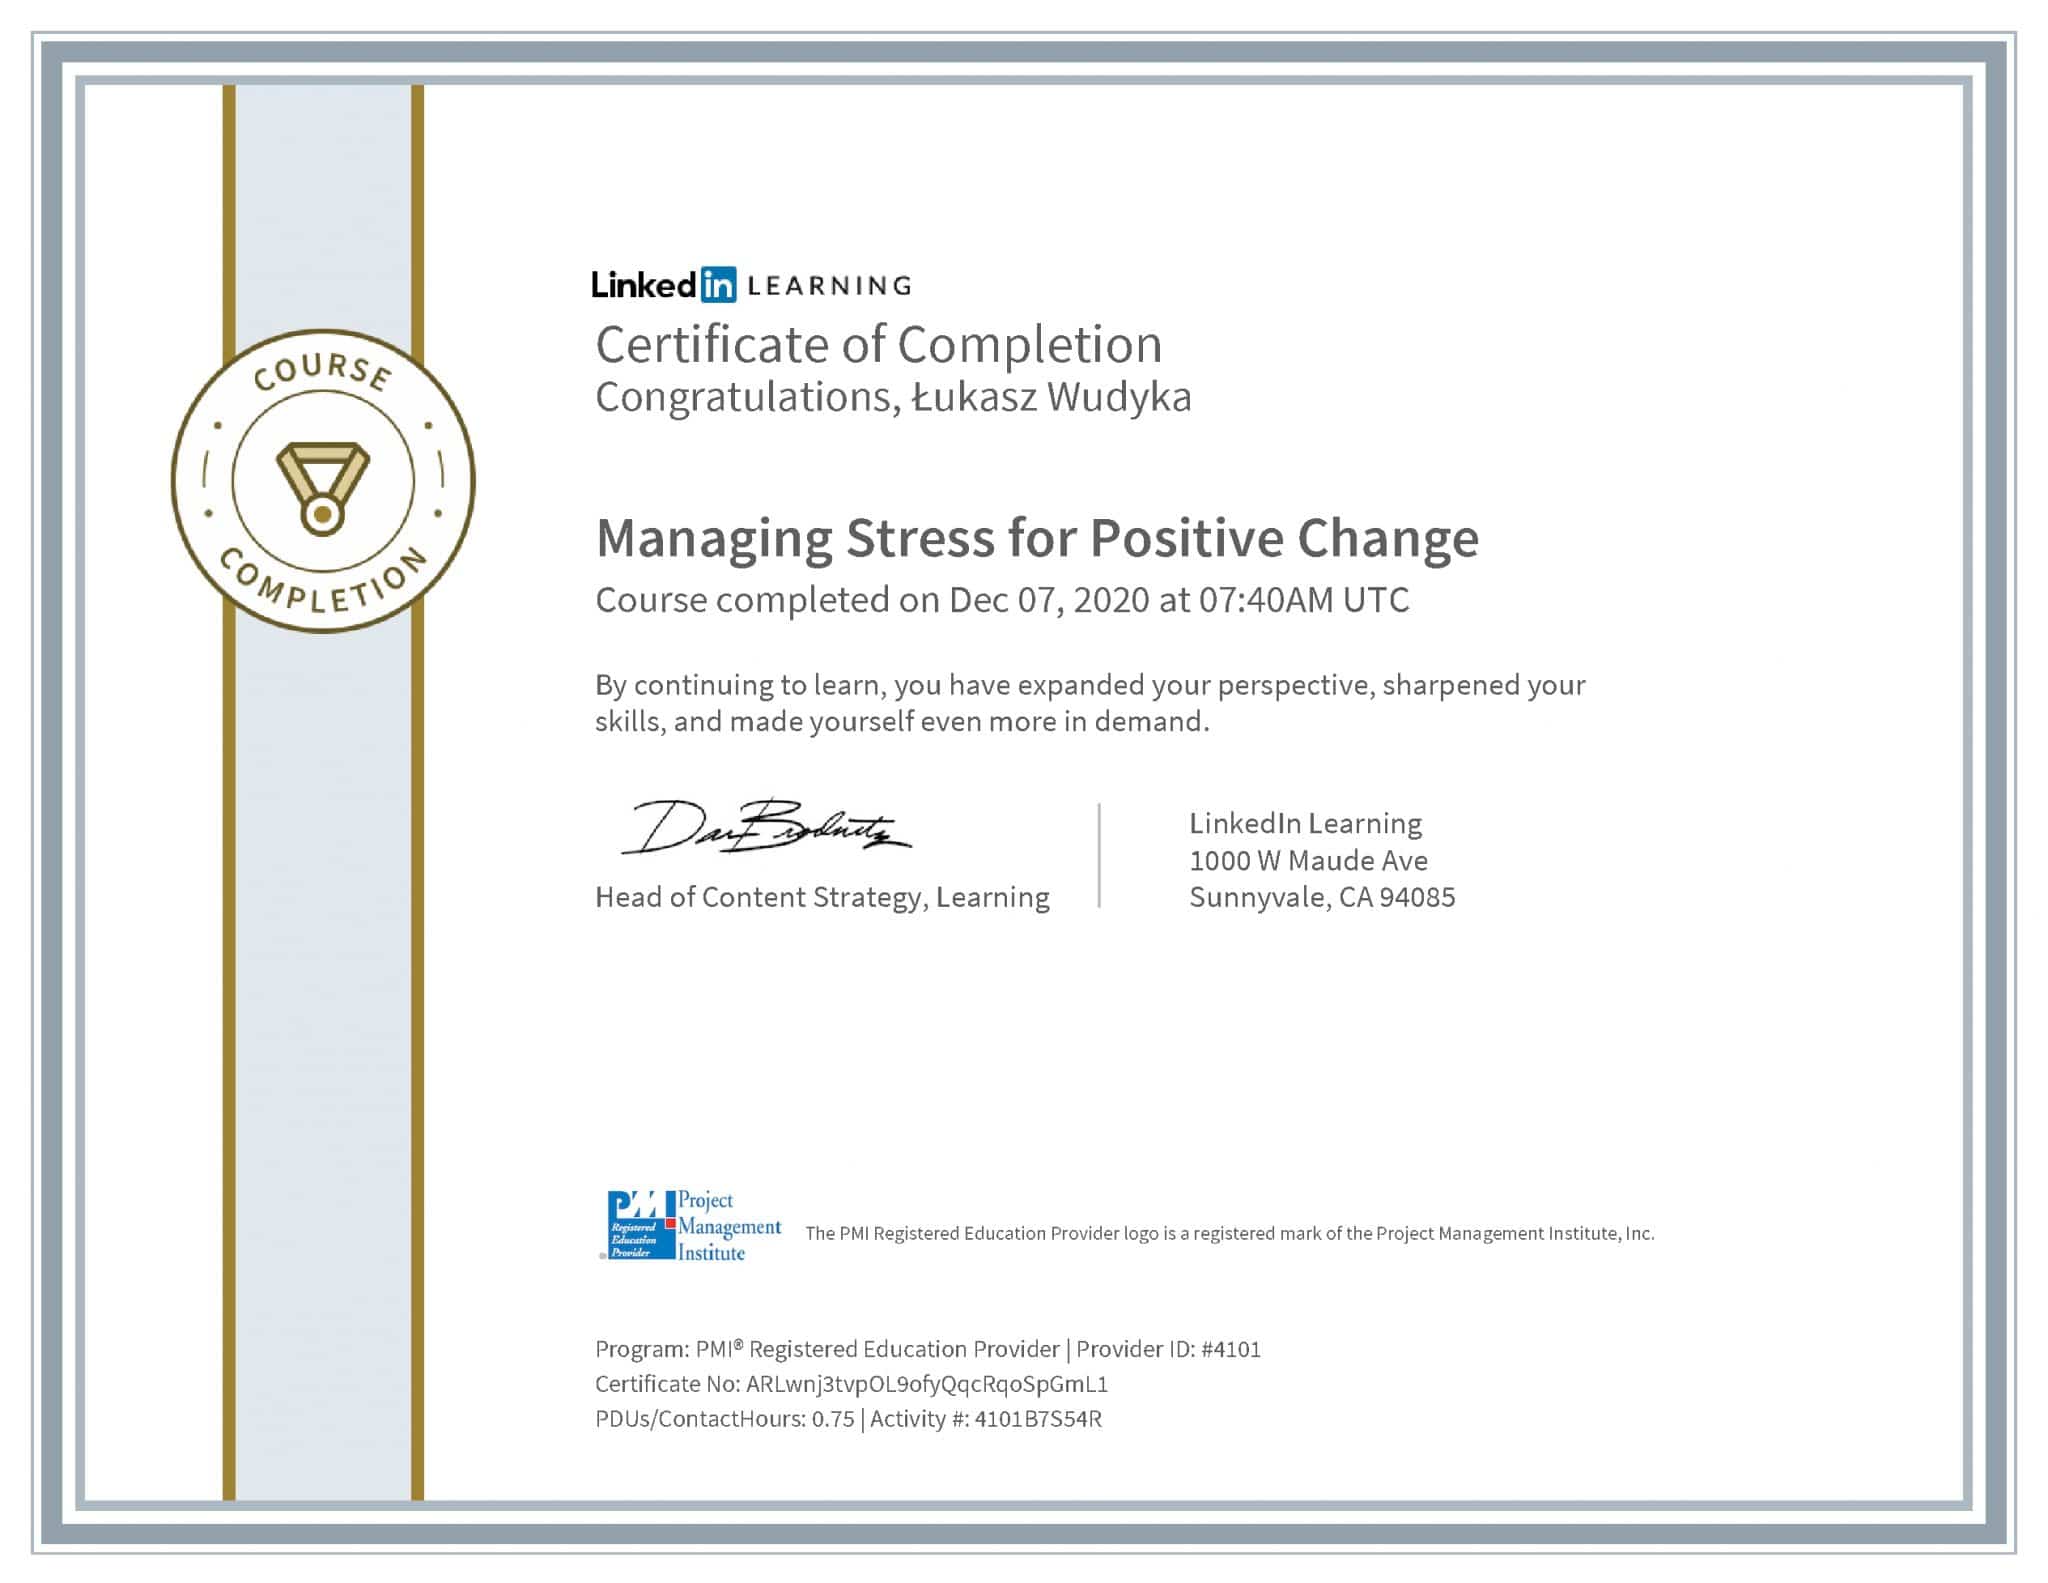 Łukasz Wudyka certyfikat LinkedIn Managing Stress for Positive Change PMI